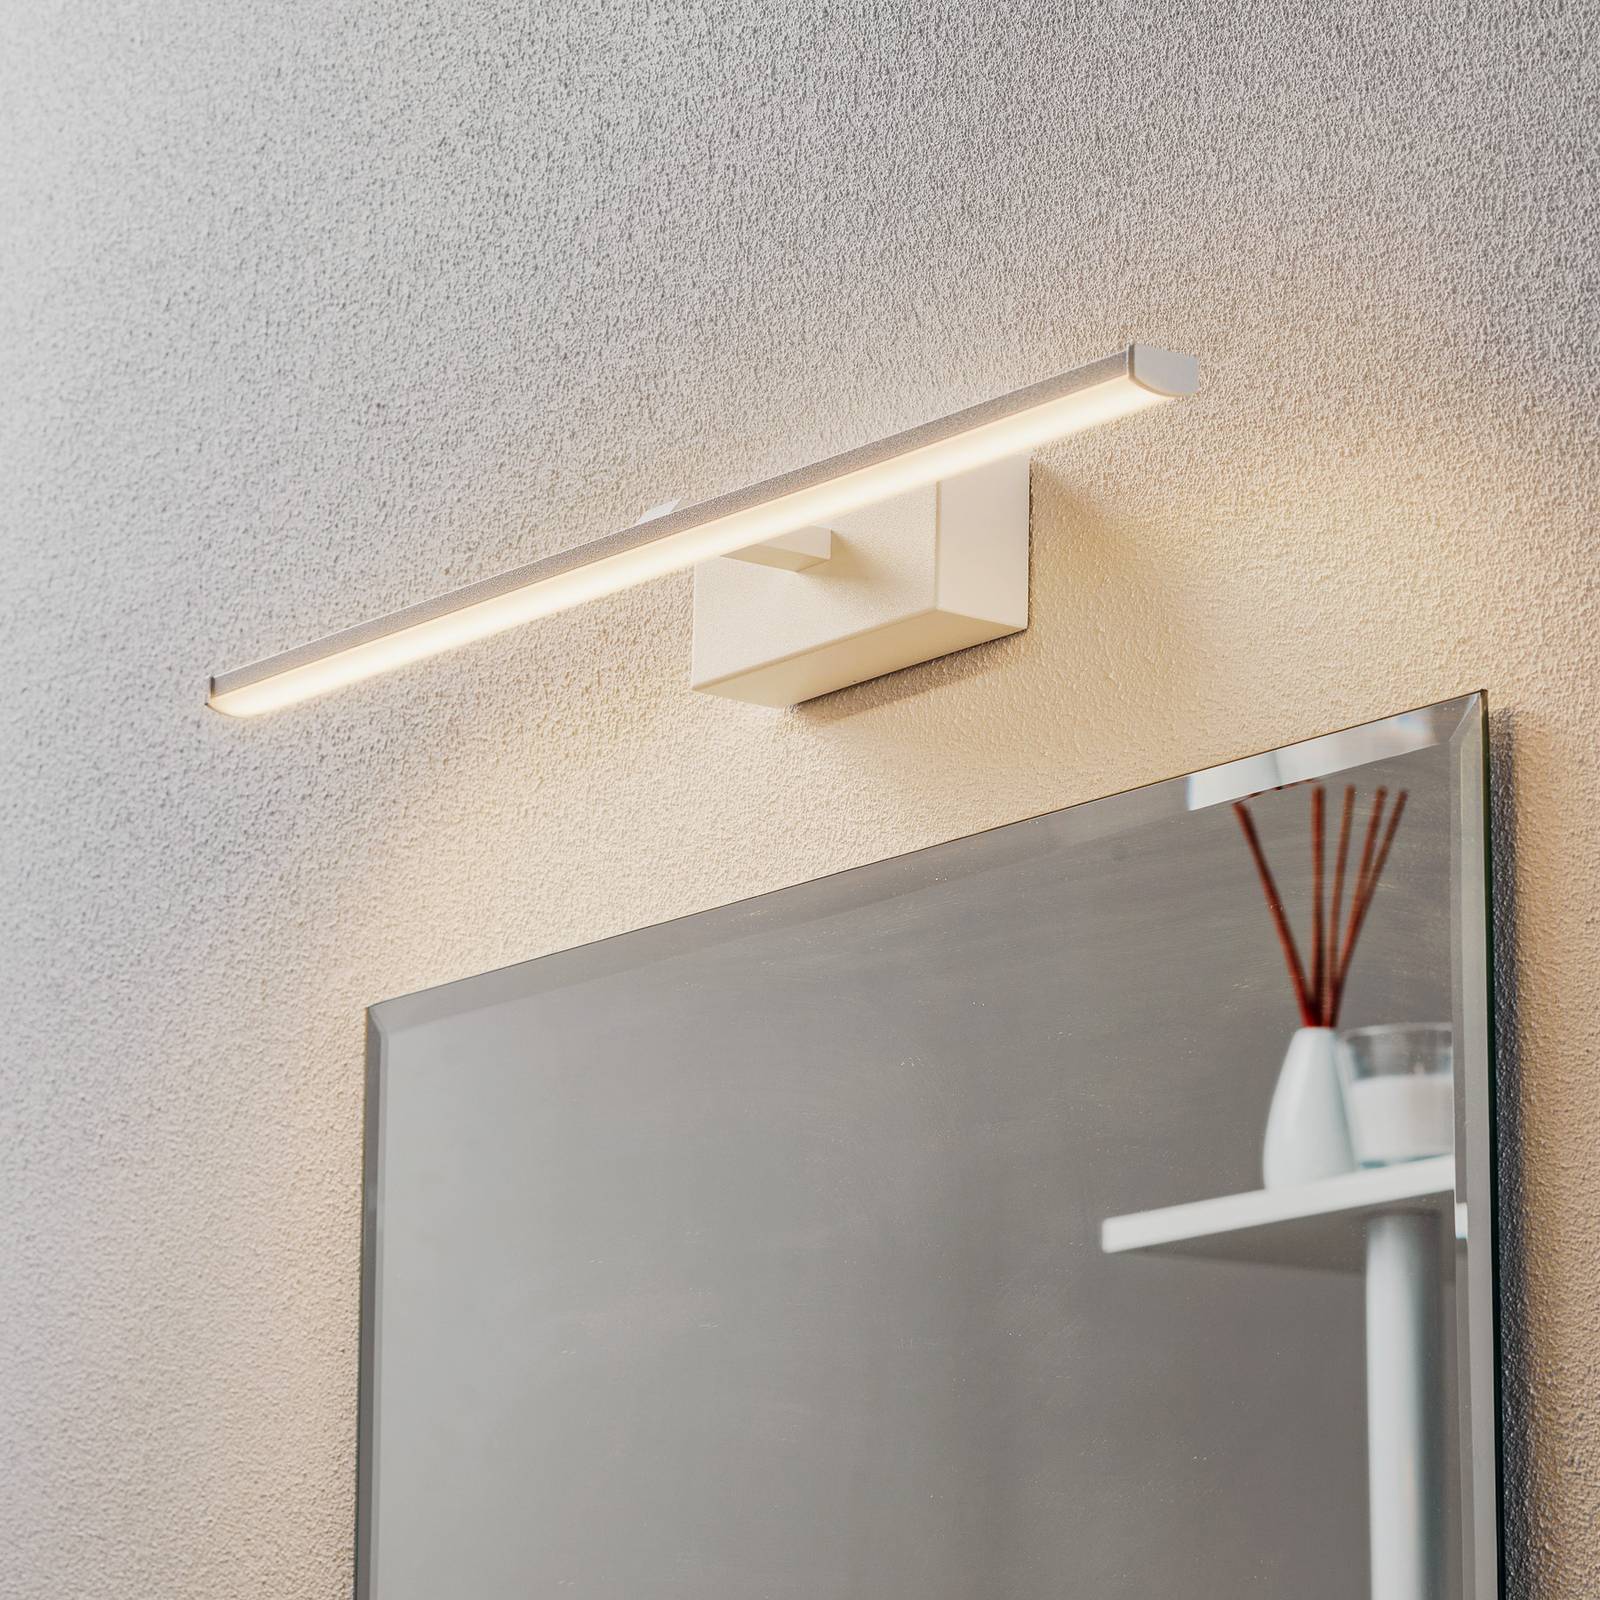 Fabas Luce LED nástěnné světlo Nala, bílé, šířka 50 cm